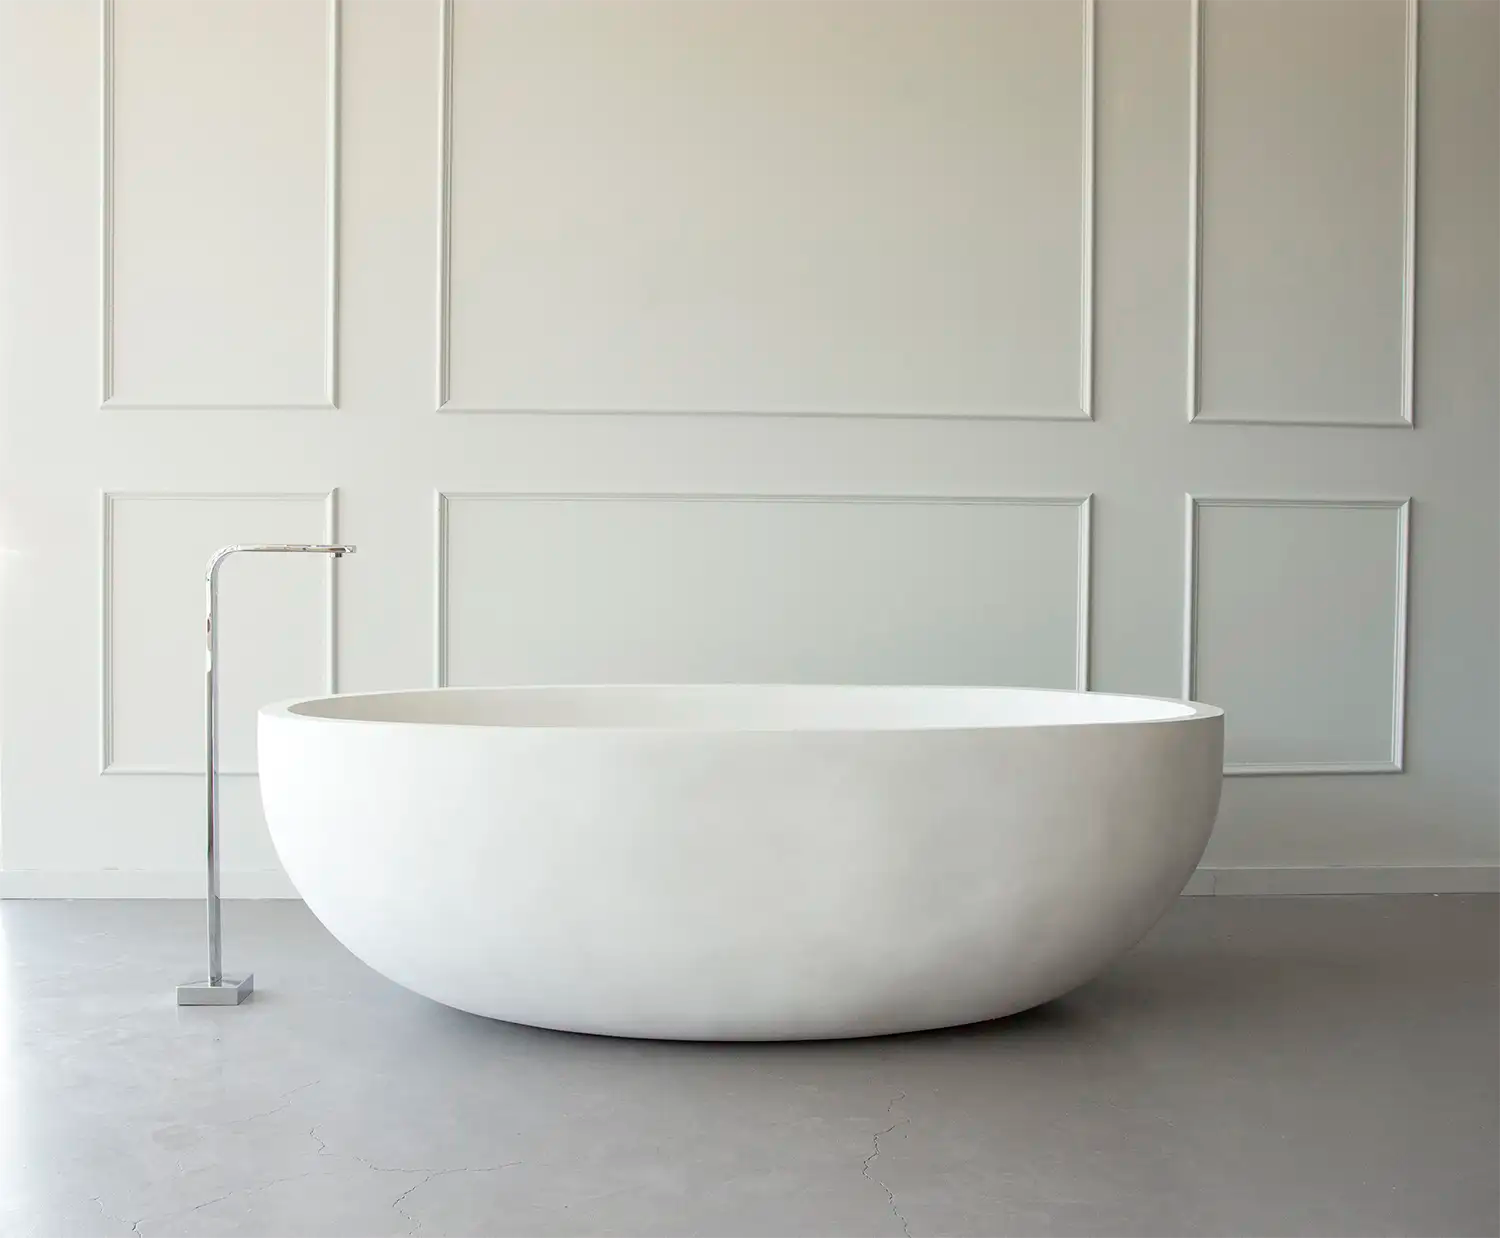 Rubens Bath in Pure White